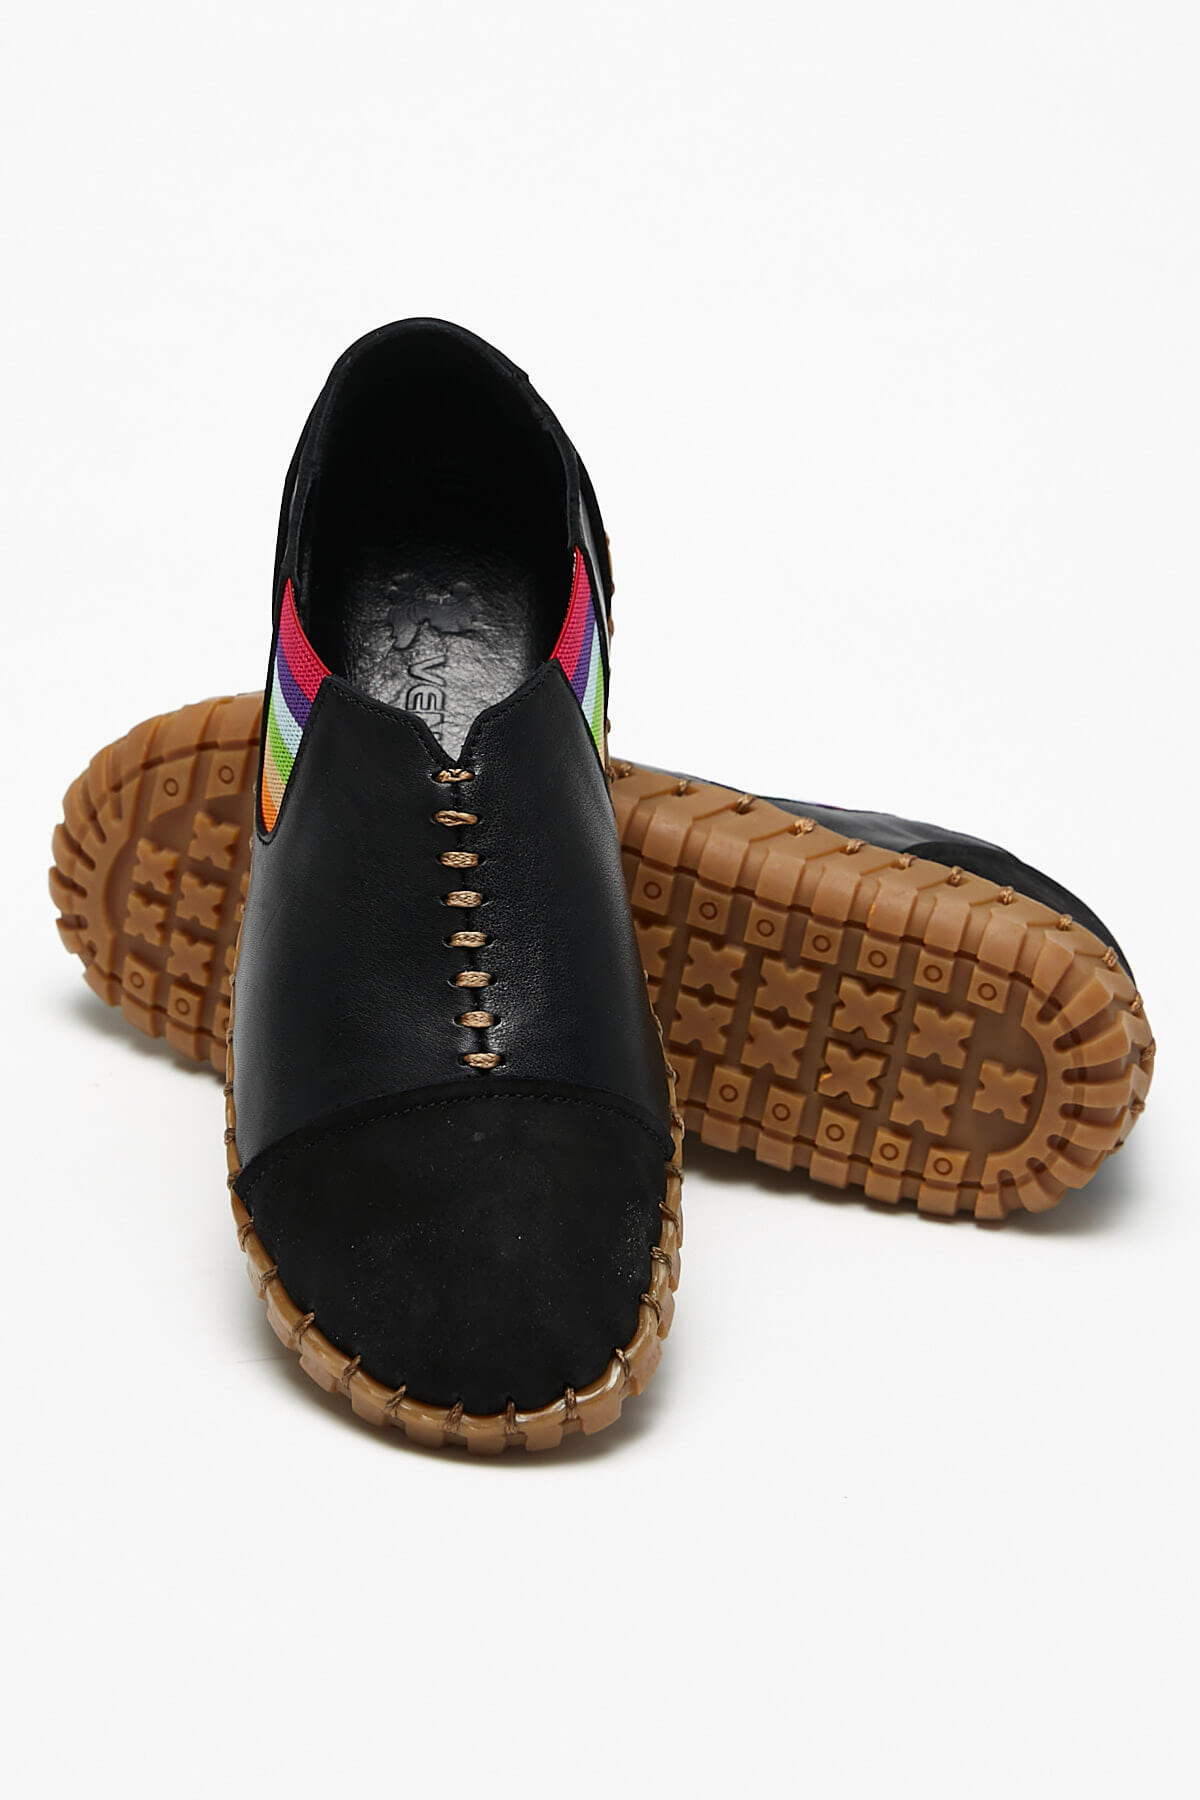 Kadın Comfort Ayakkabı Siyah 2010703Y - Thumbnail